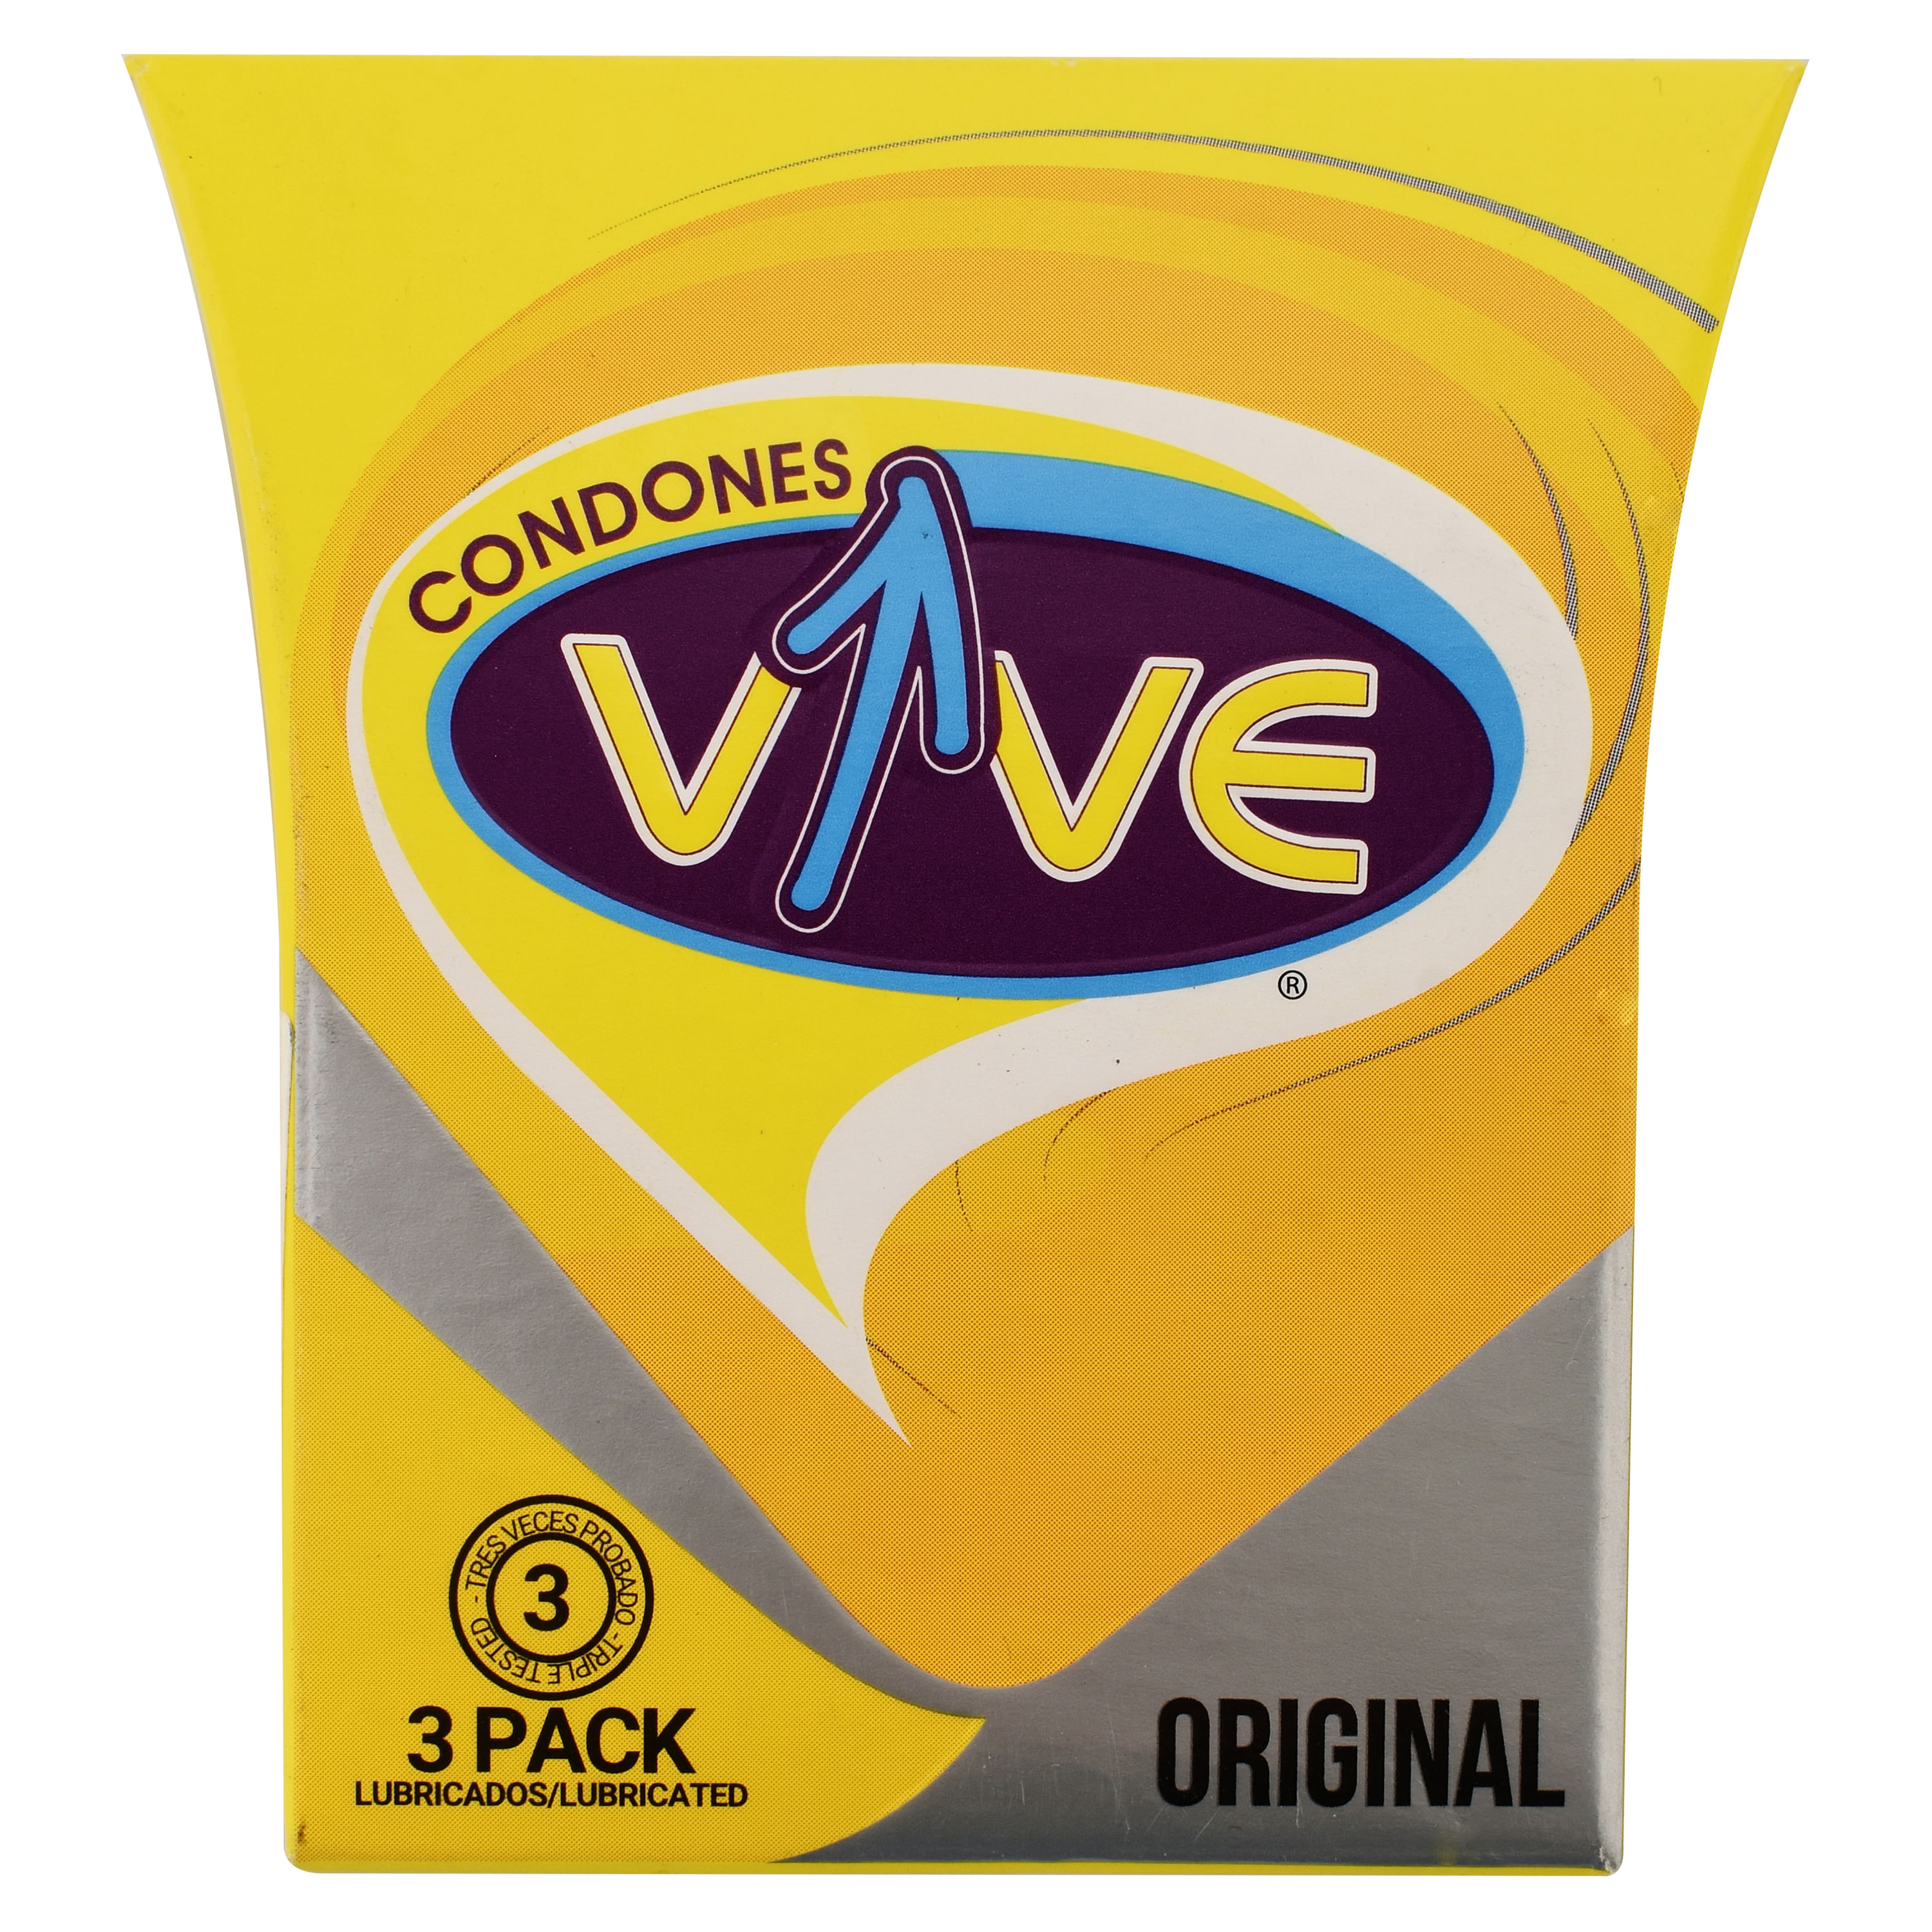 Vive-Cond-n-Original-3-Unidades-1-30961